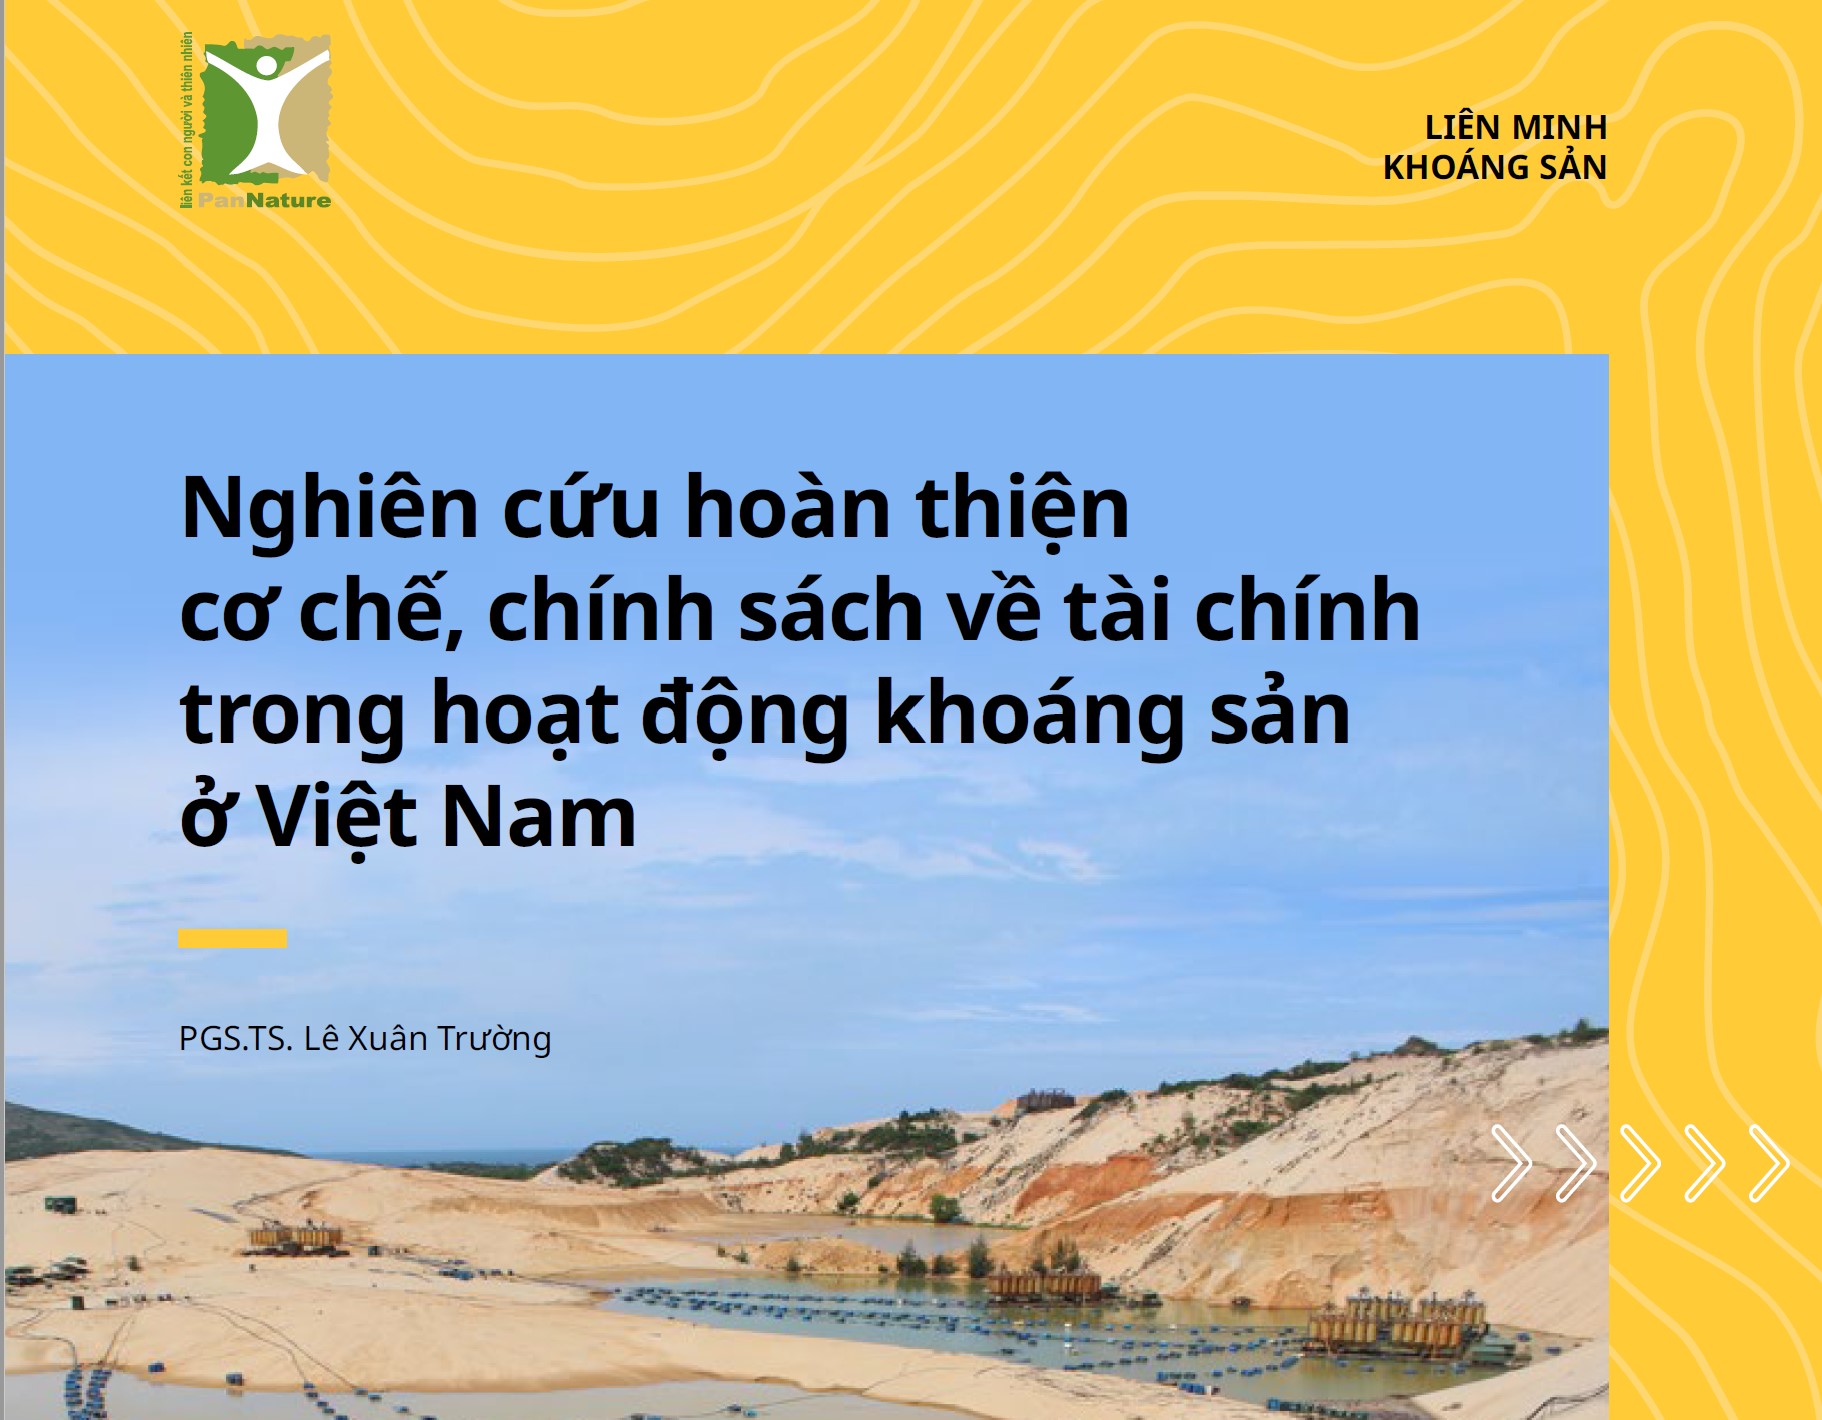 Nghiên cứu hoàn thiện cơ chế, chính sách về tài chính trong hoạt động khoáng sản ở Việt Nam